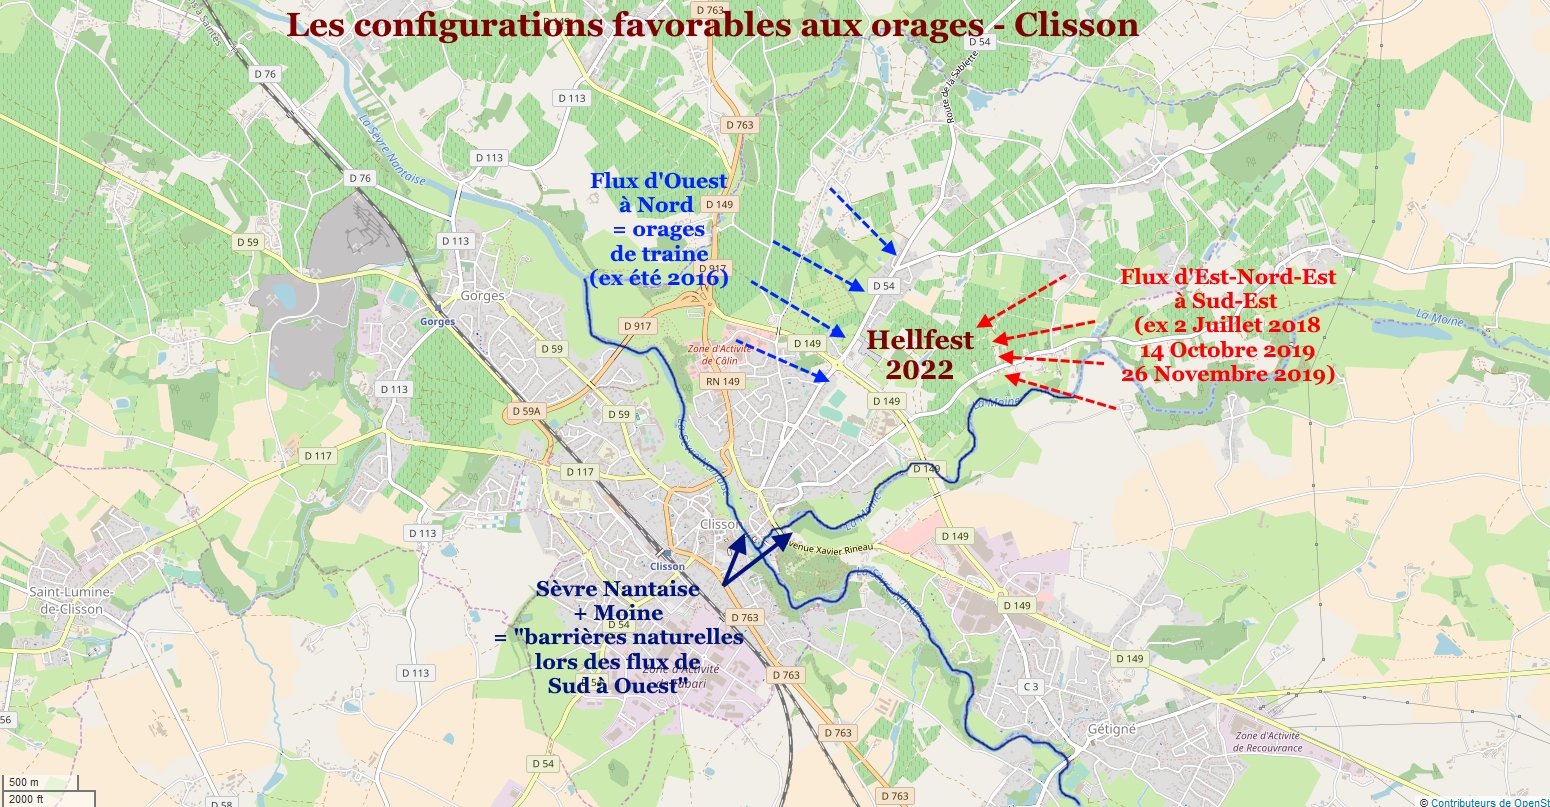 Probabilits orages configuration Clisson 2022